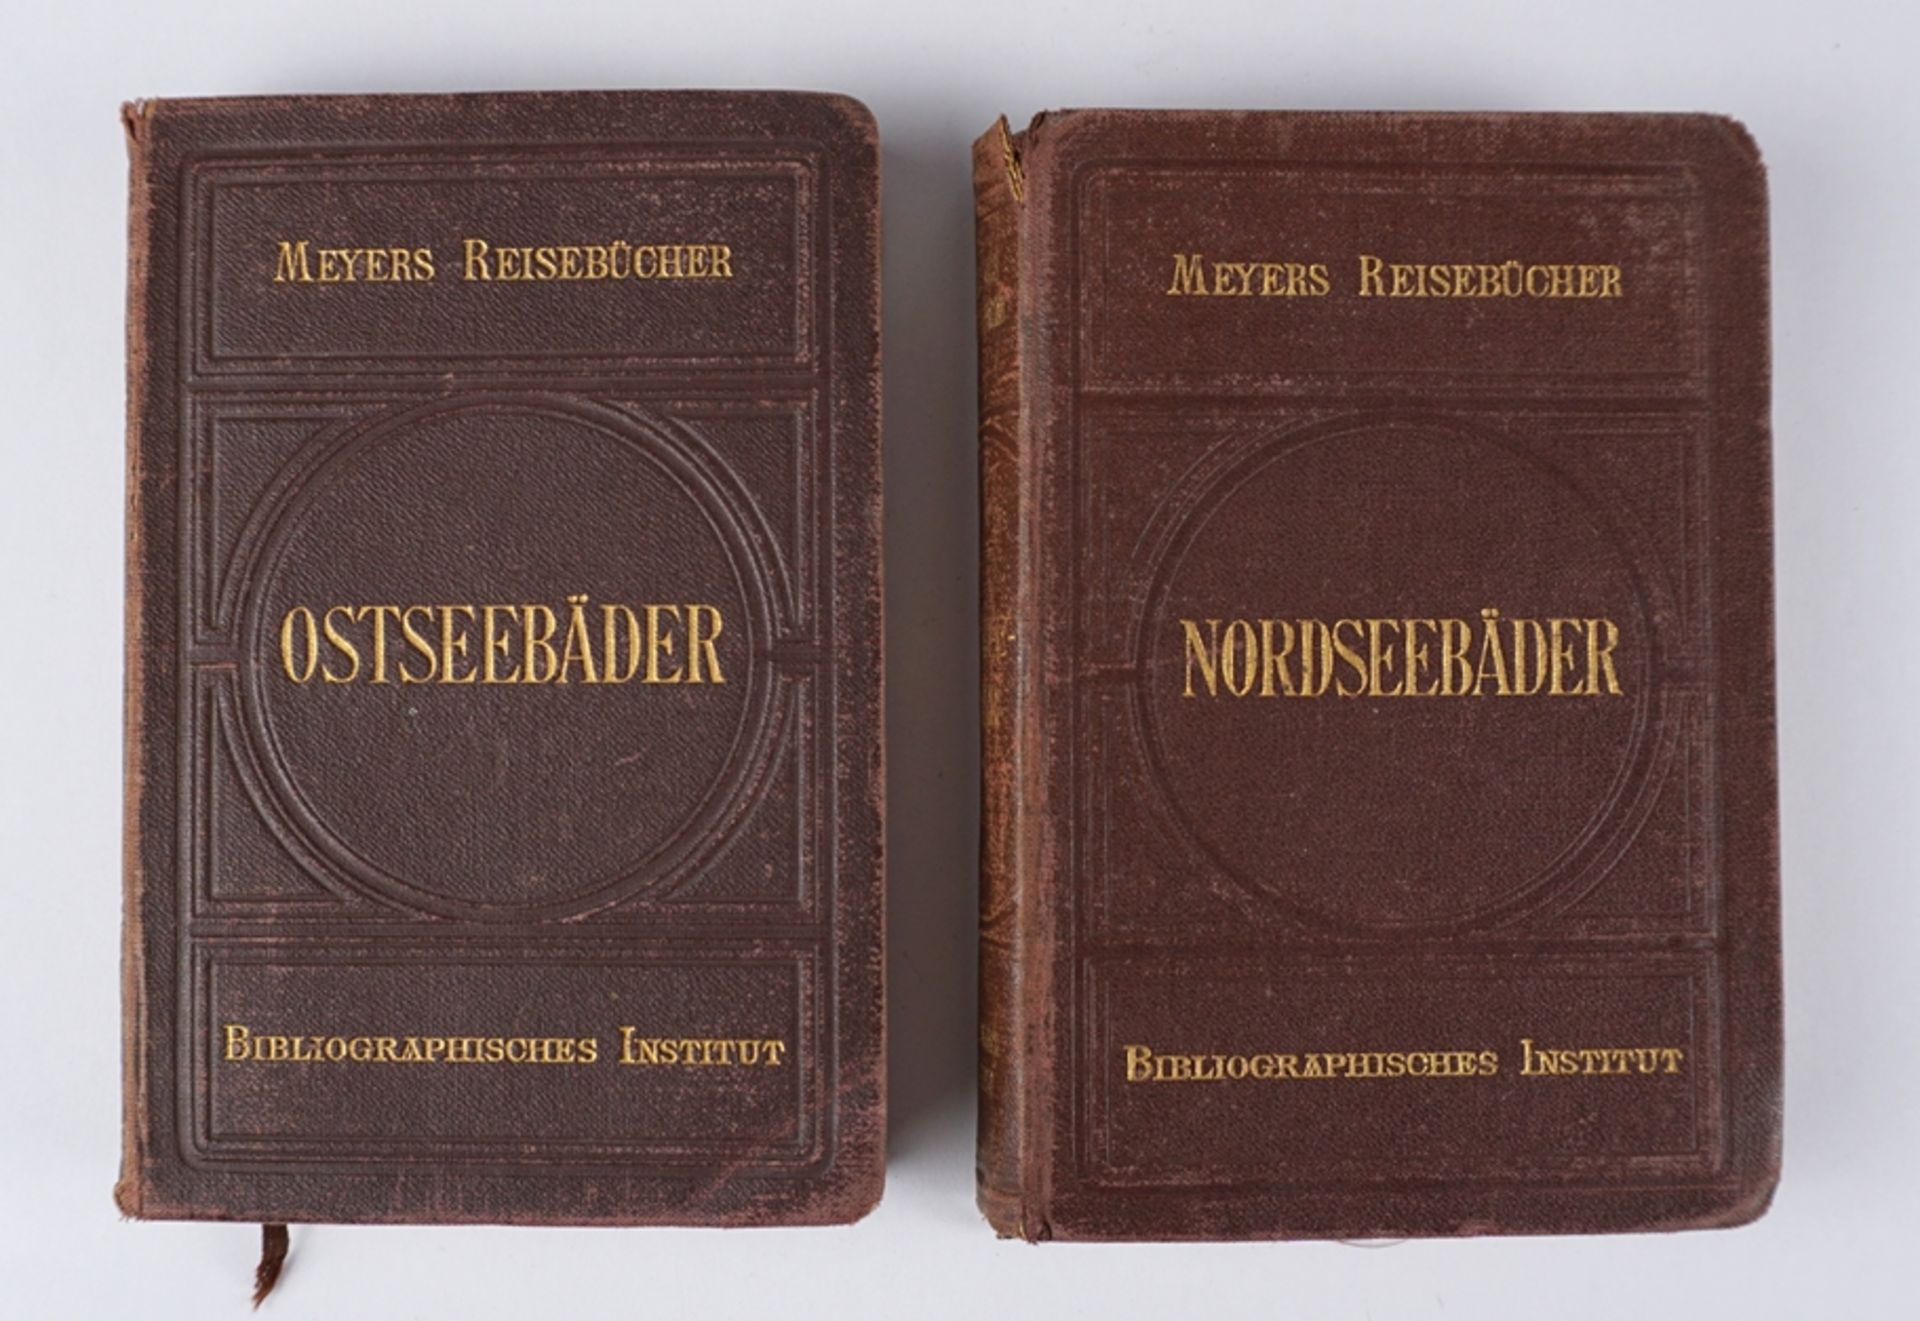 2 Meiers Reisebücher "Ostseebäder", 1903 und "Nordseebäder", 1904 